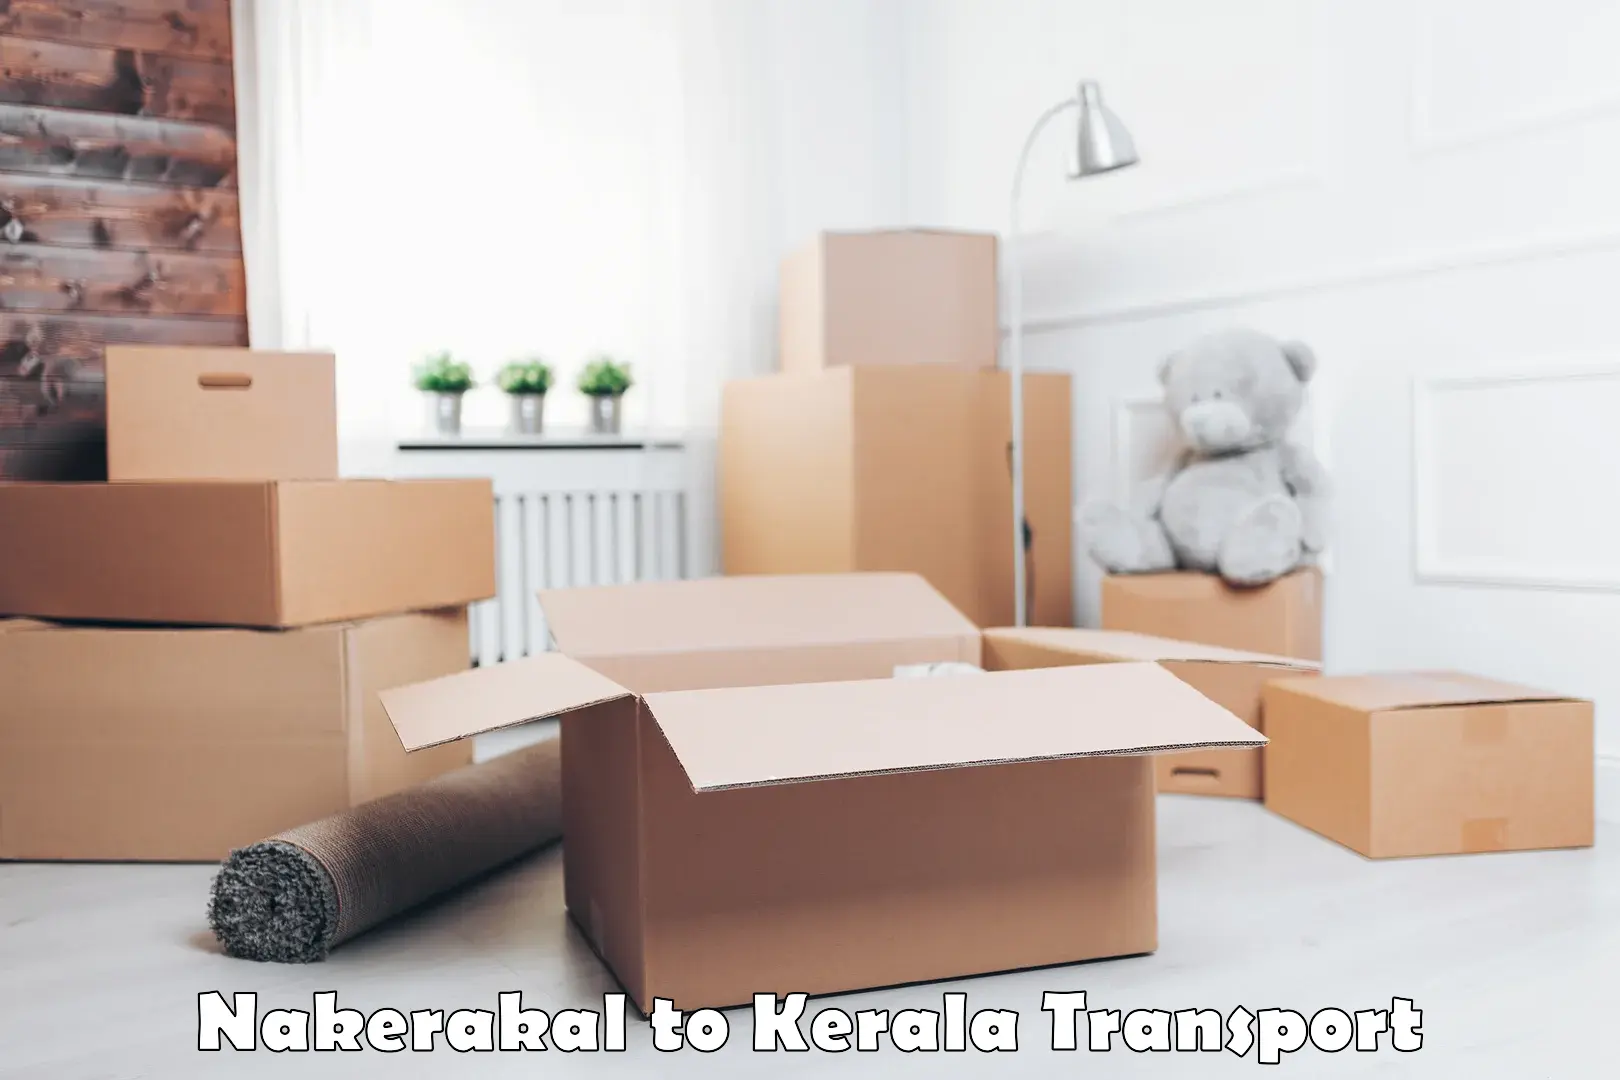 Logistics transportation services Nakerakal to Nilambur